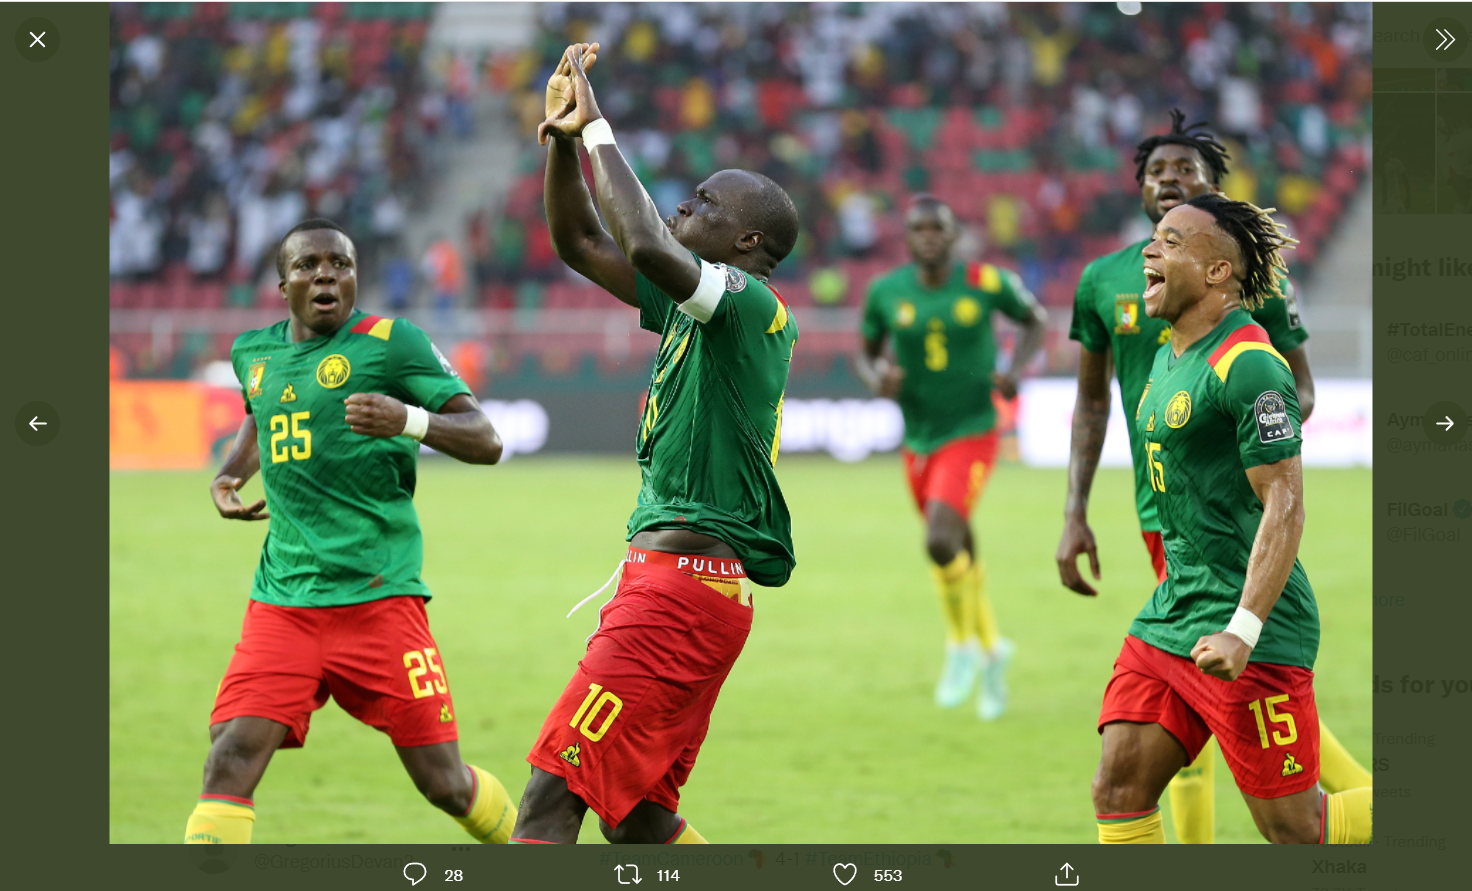 Hasil Piala Afrika 2021: Kamerun Pesta Gol, Burkina Faso Menang Tipis